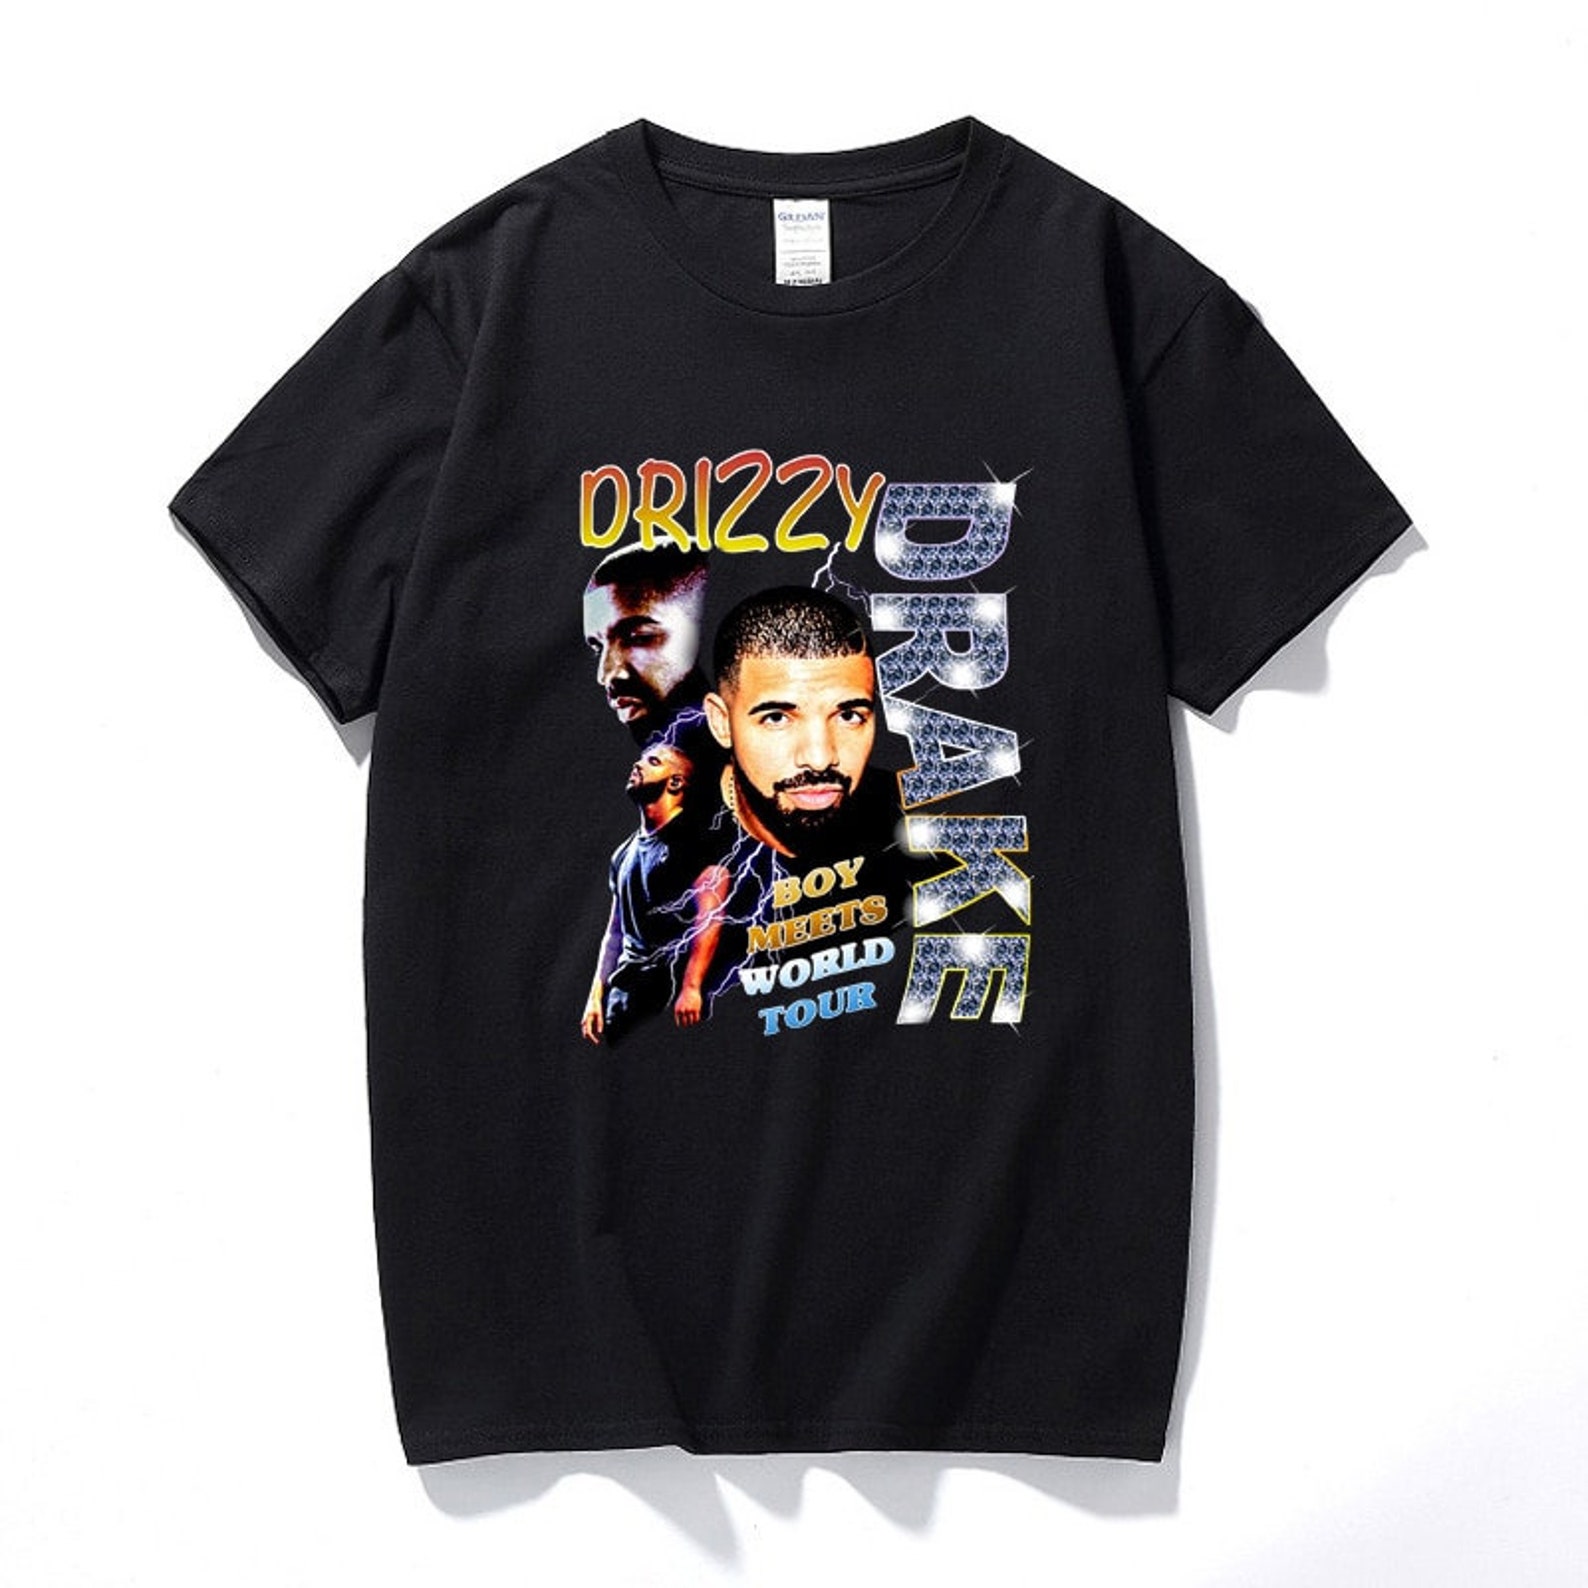 Drake Shirt Tshirt New Gift High Quality Unisex Shirt Tshit Top T Gift